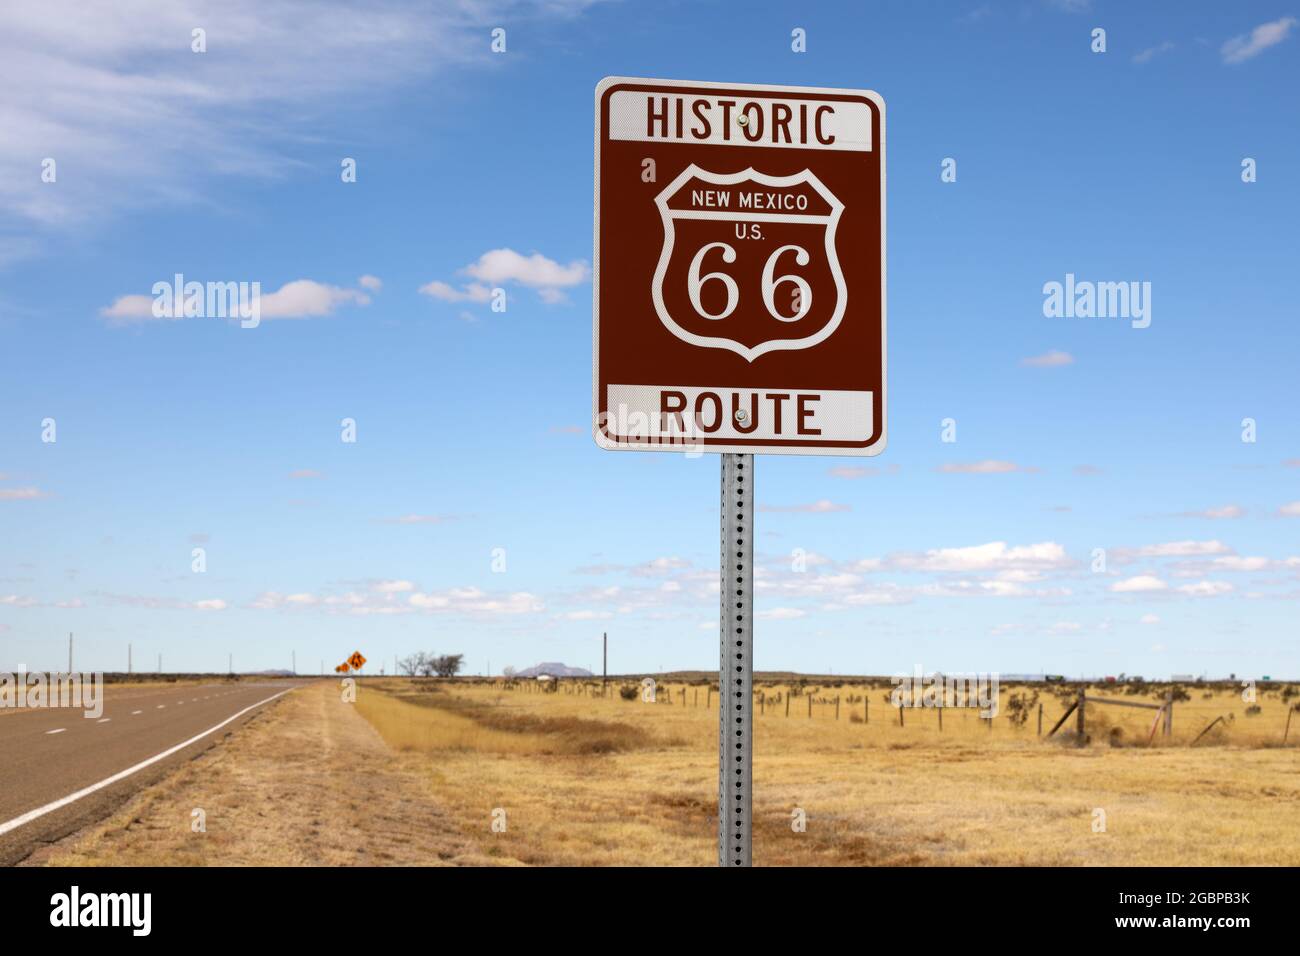 Geografia / viaggio, Stati Uniti, nuovo Messico, Tucumcari, Route 66 segno, Route 66, Tucumcari, New Mexico, ADDITIONAL-RIGHTS-CLEARANCE-INFO-NOT-AVAILABLE Foto Stock